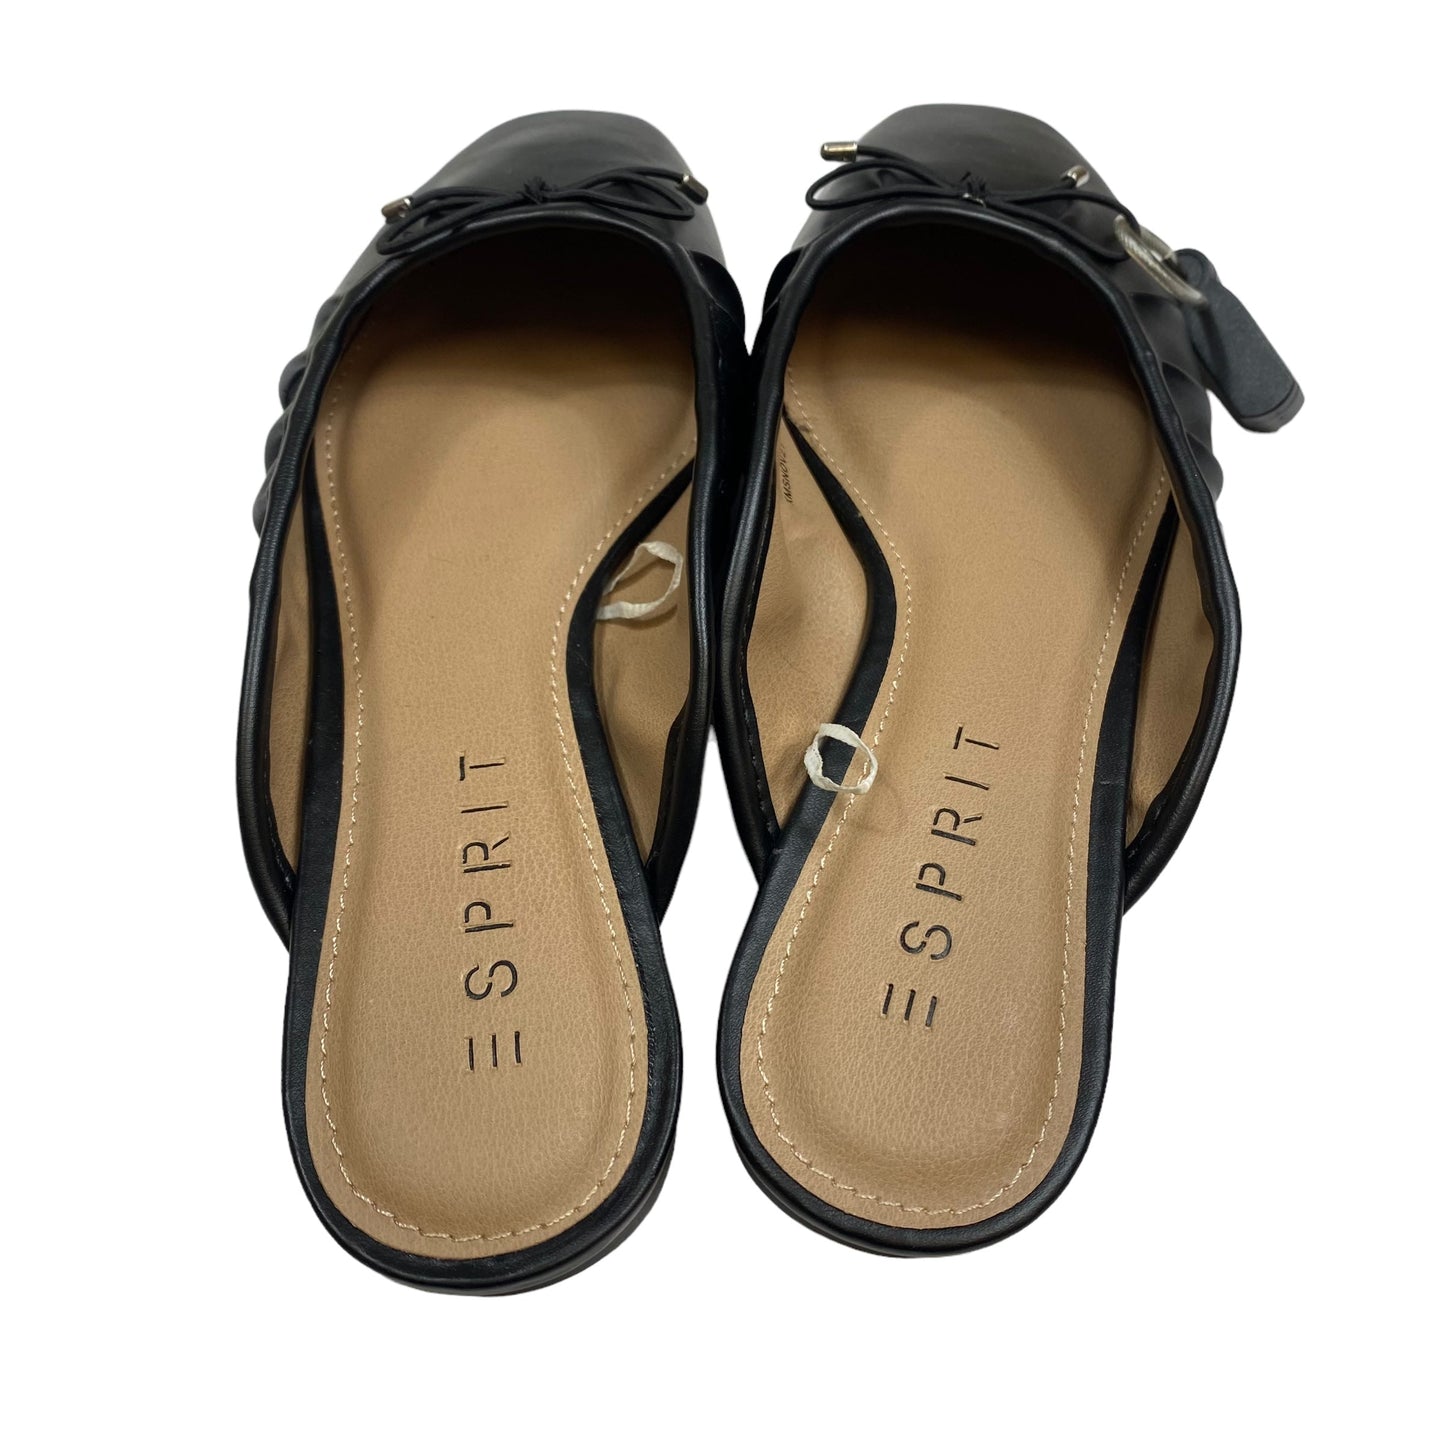 Shoes Flats By Esprit  Size: 7.5